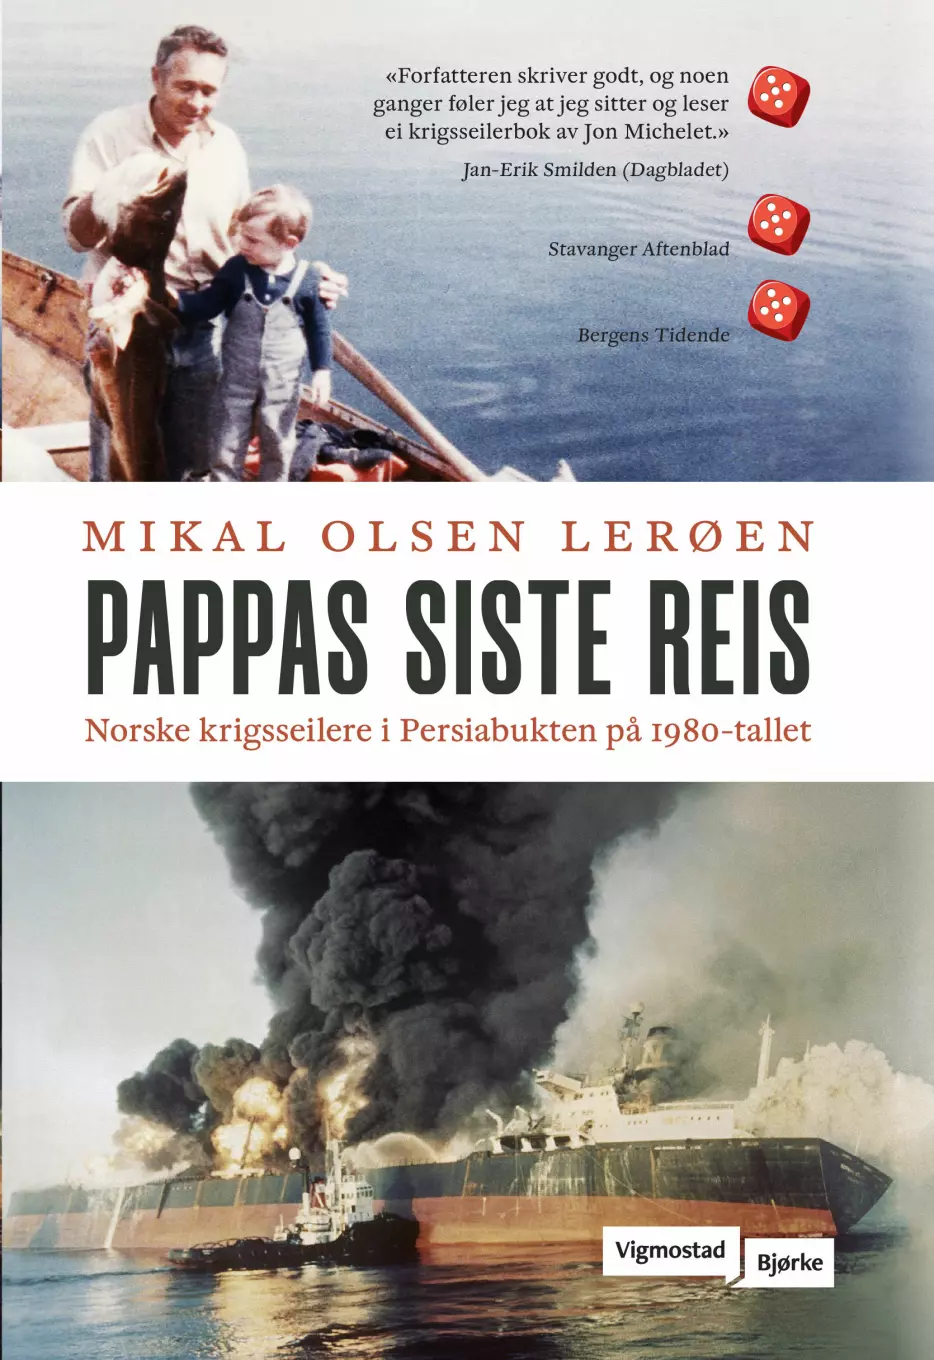 Mikal Olsen Lerøen vant prisen for boka «Pappas siste reis».